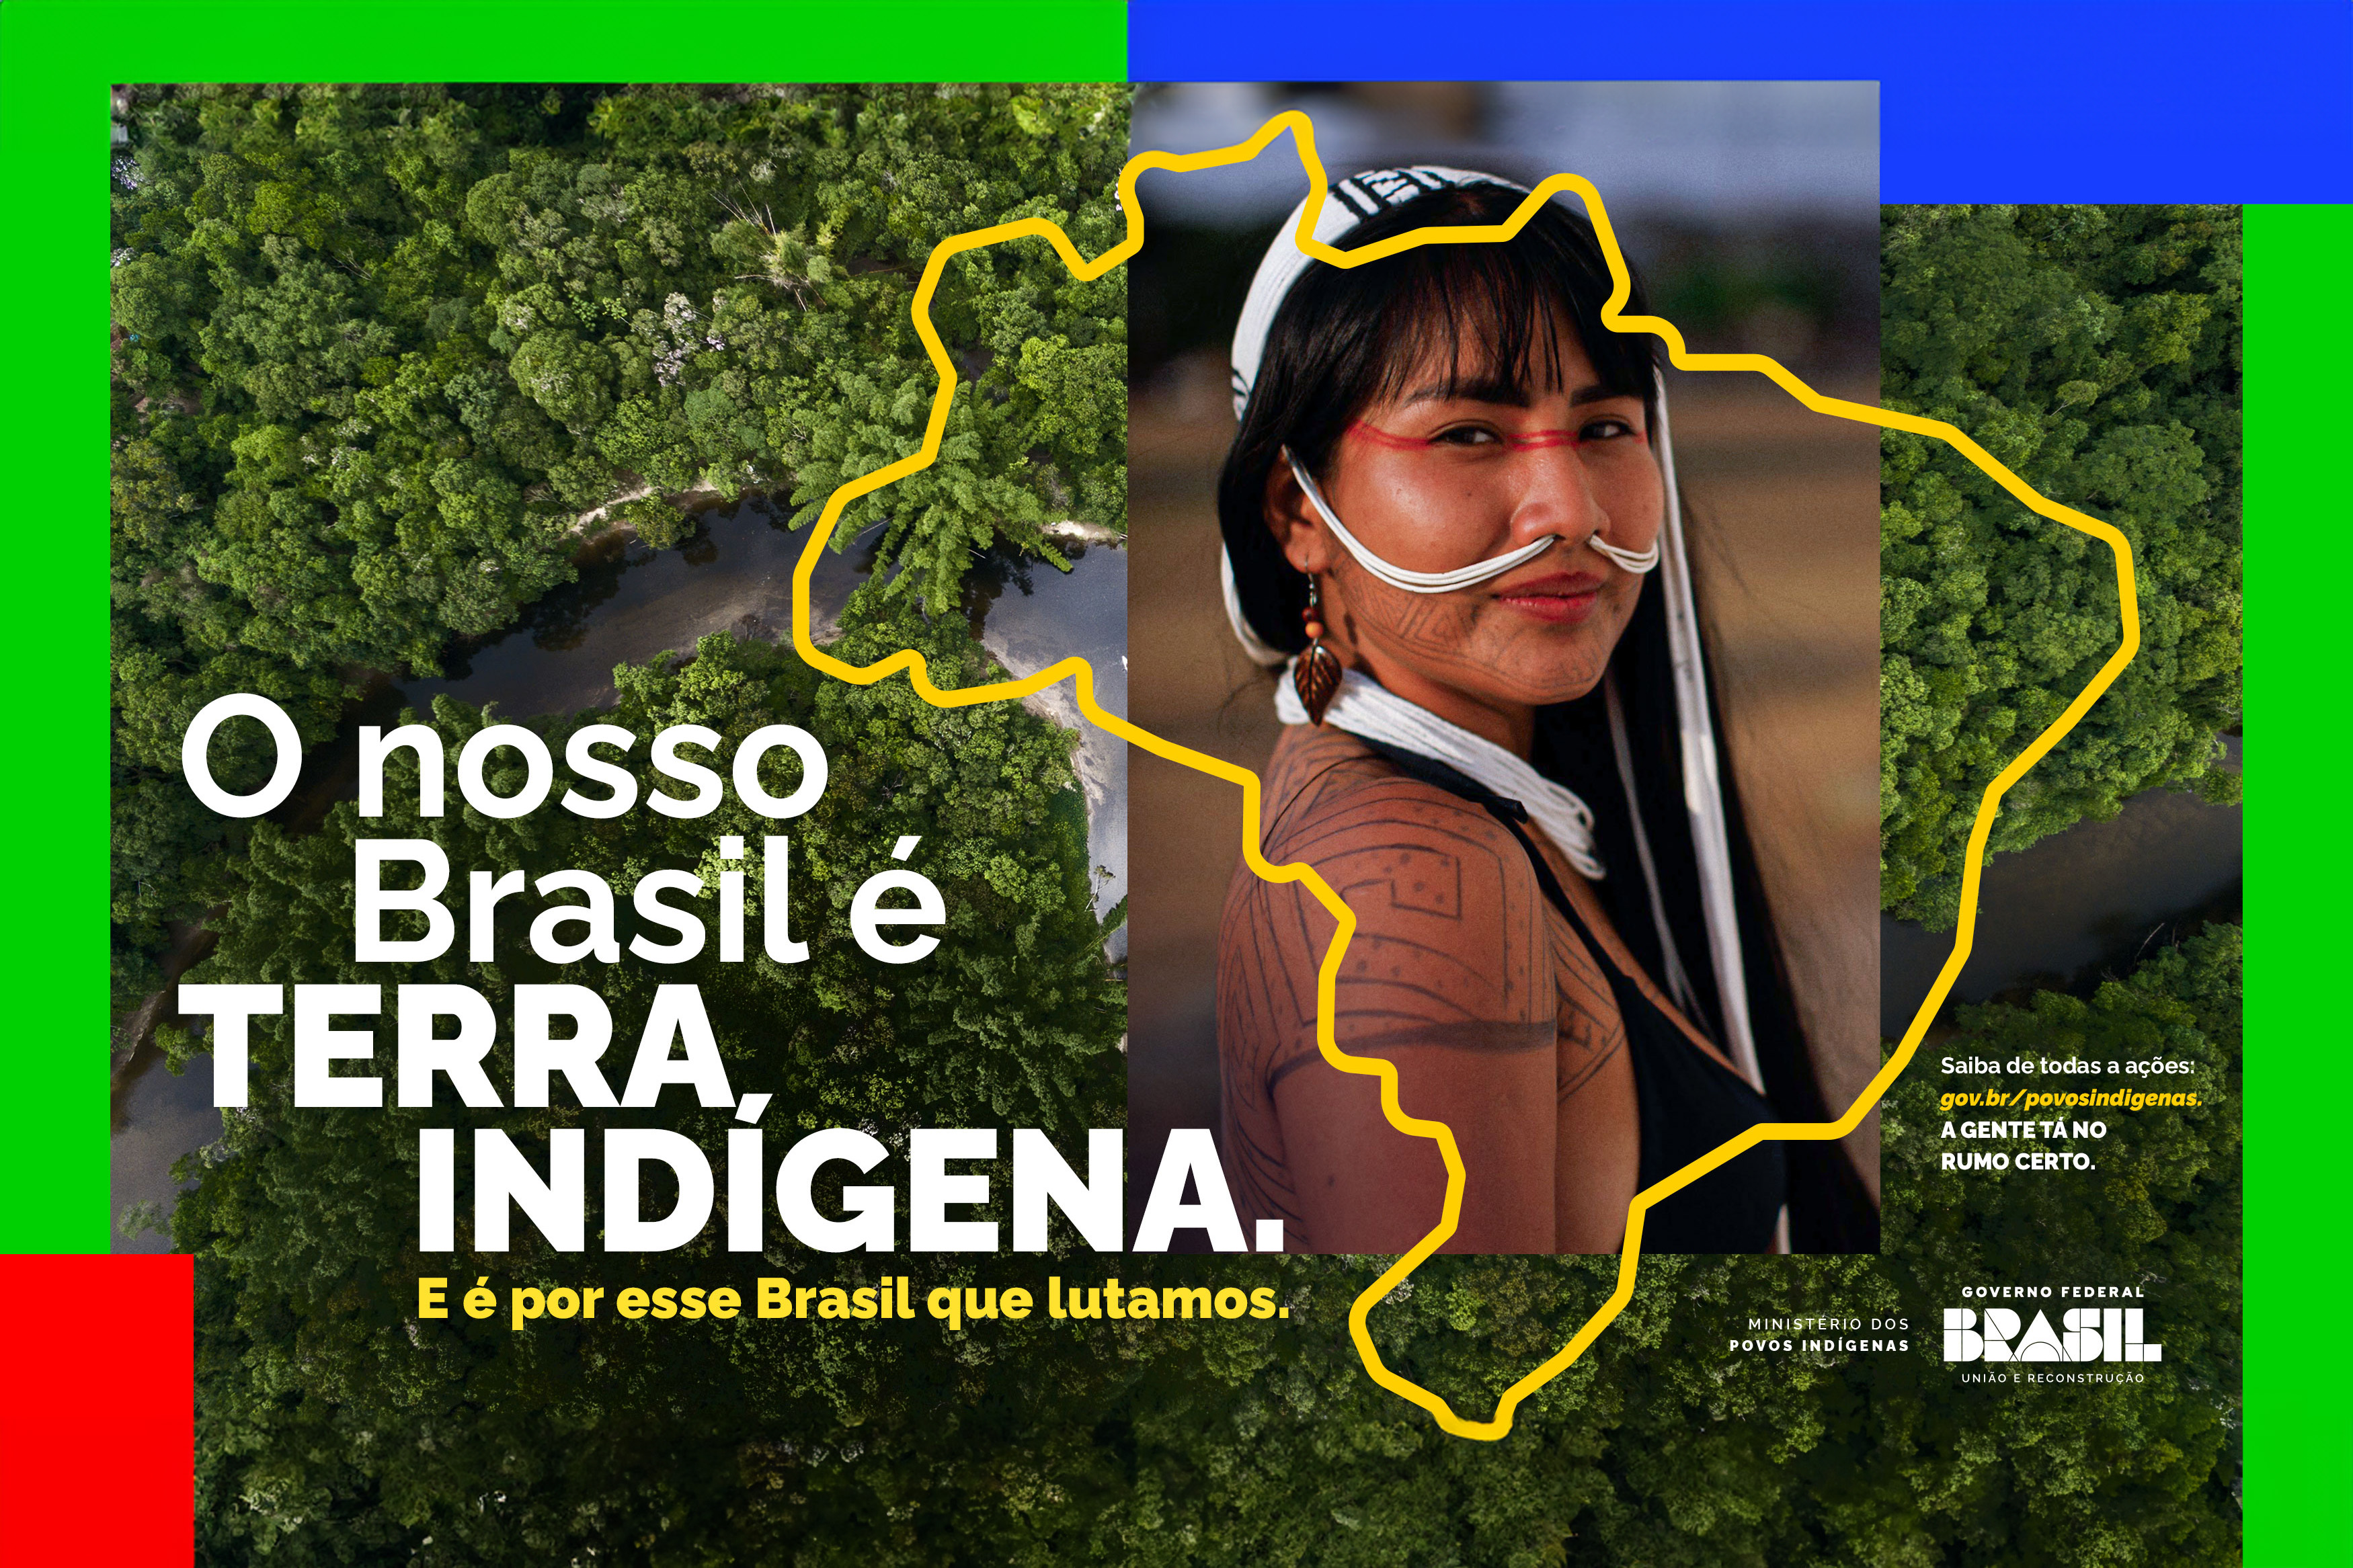 Ministério dos Povos Indígenas: a concretização da presença indígena no Estado brasileiro